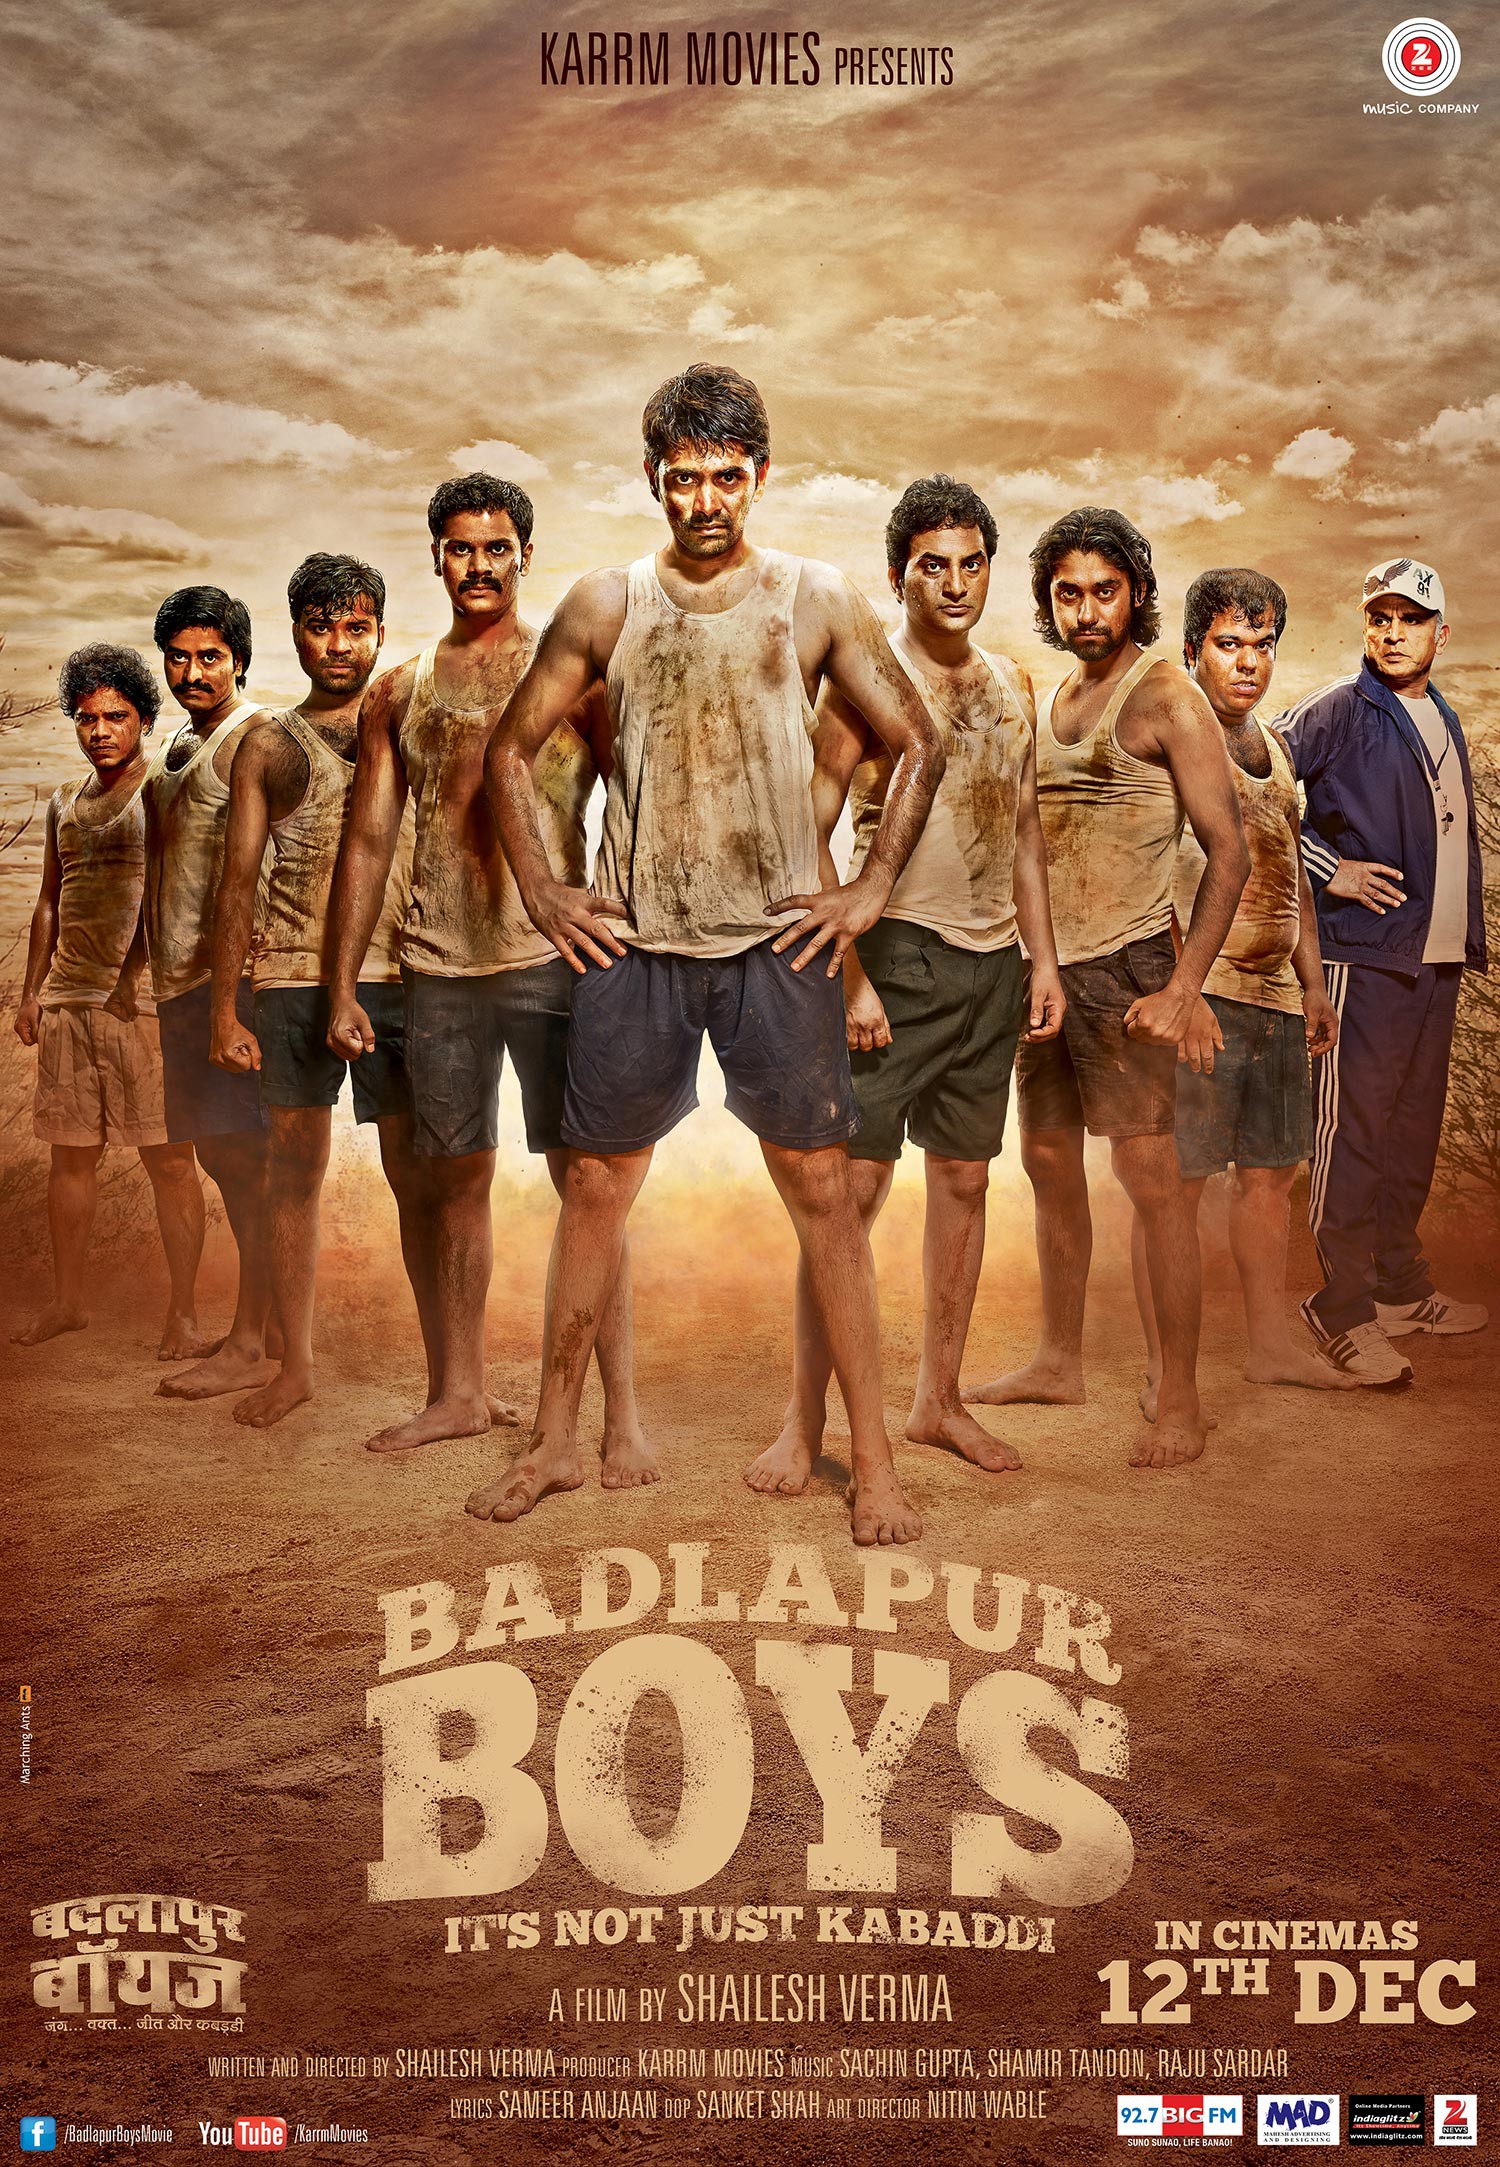 Badlapur Boys : Mega Sized Movie Poster Image - IMP Awards